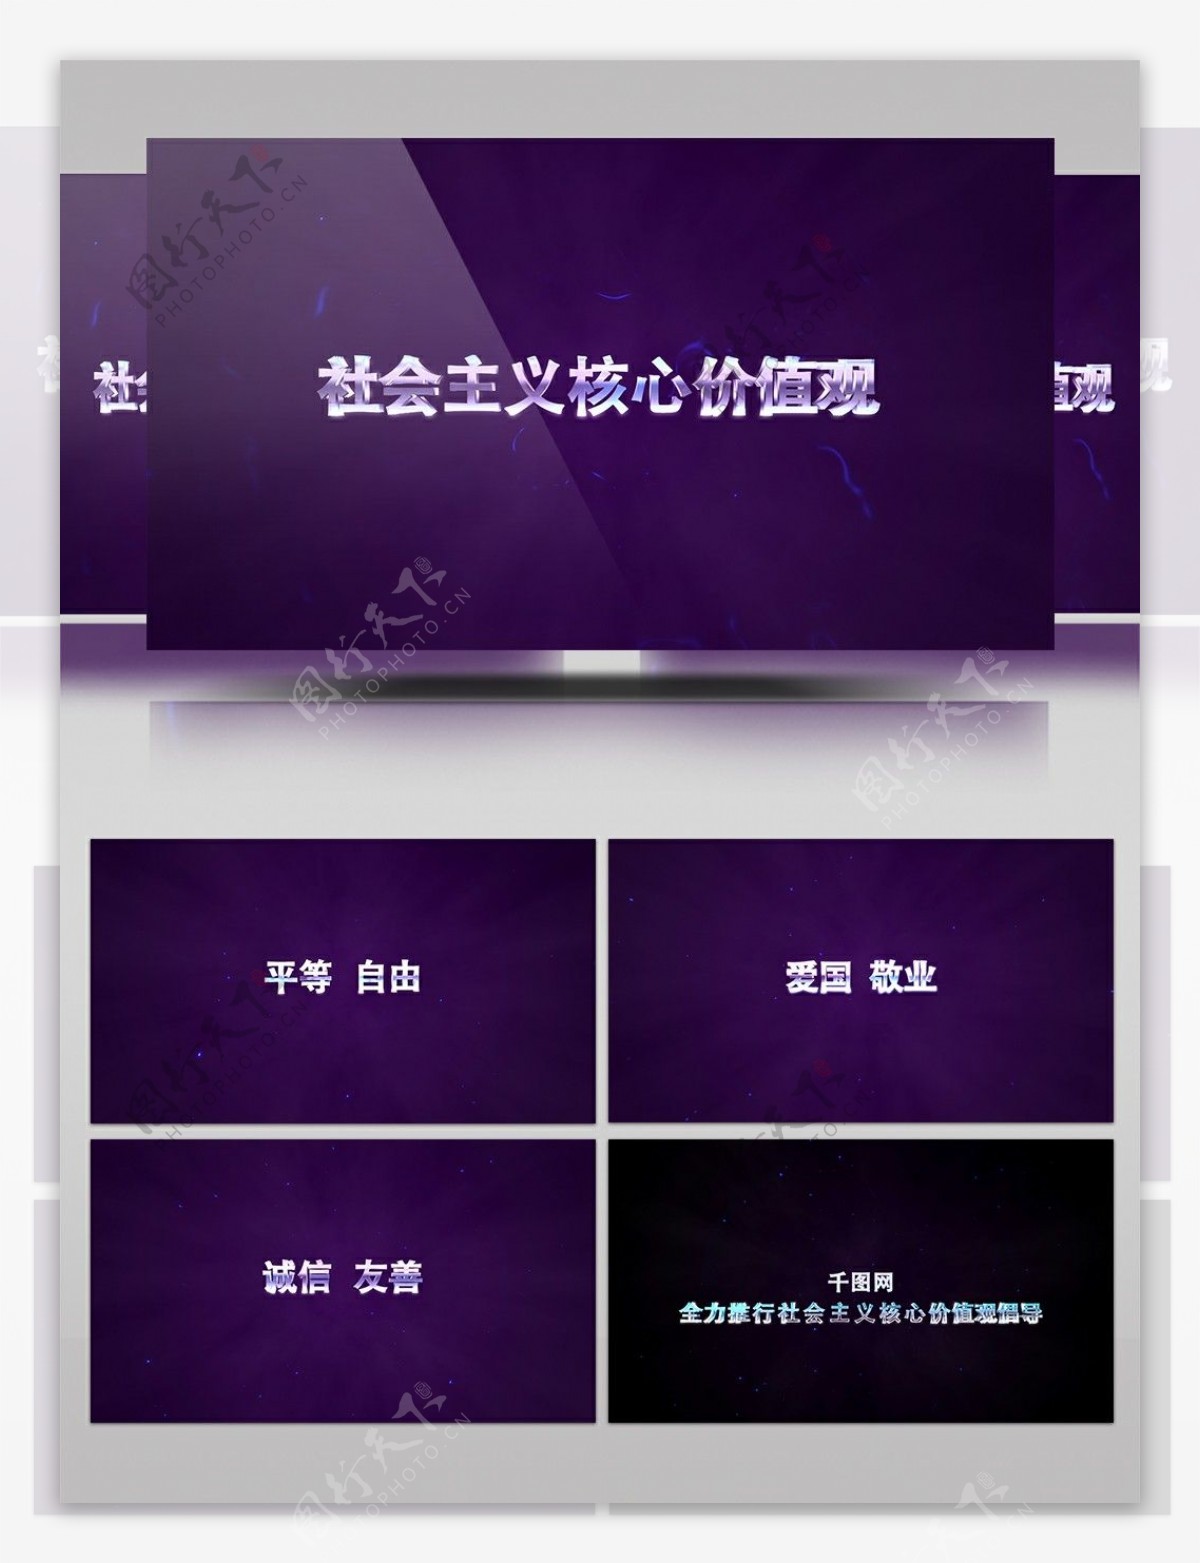 紫光特效演绎文字标题动画AE模板